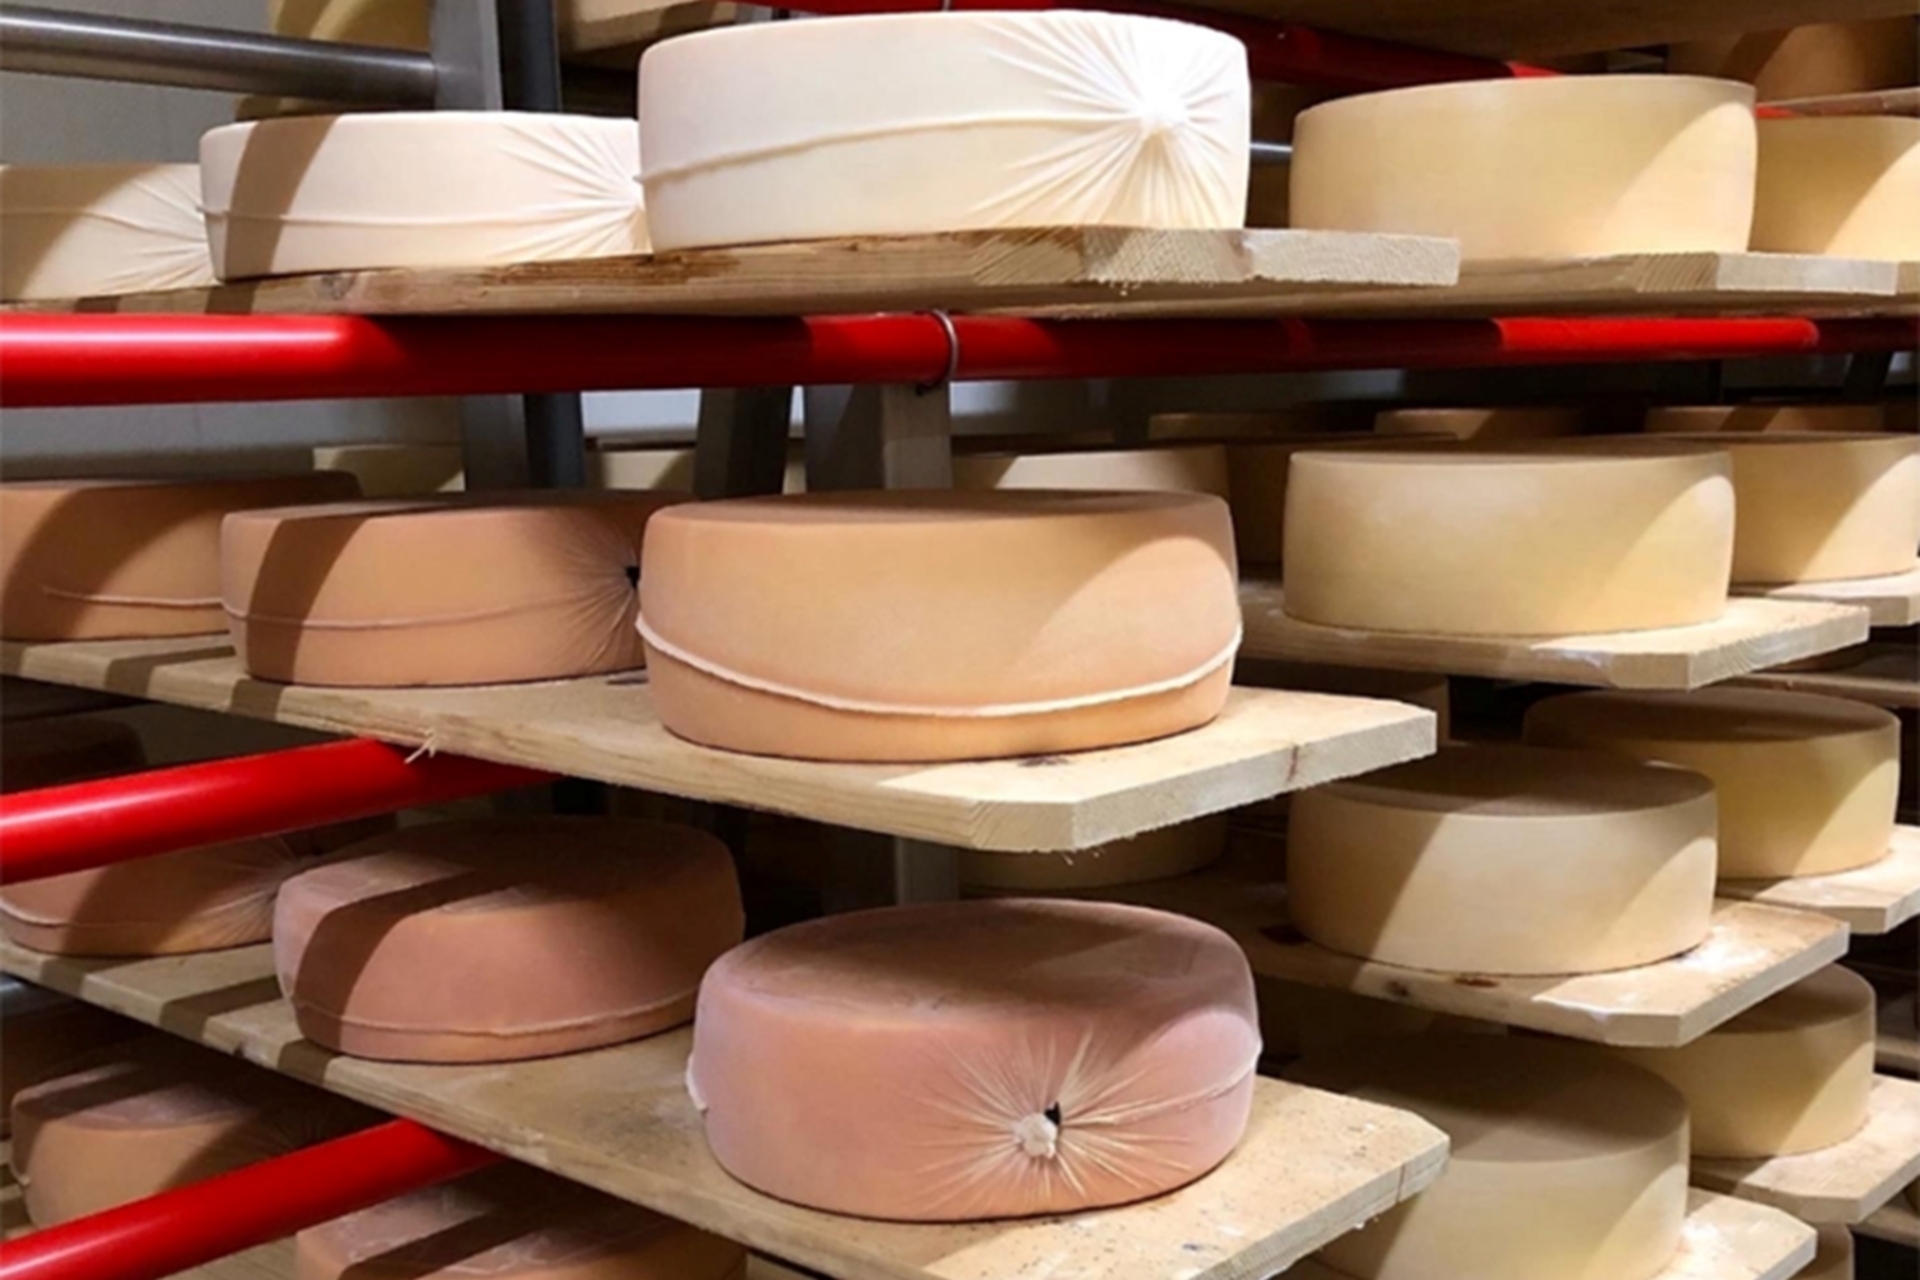 Formaggio: formaggi appena confezionati con la stagionatura fino a tre mesi e incartati con la nuova tecnica elaborata da Agroscope in Svizzera